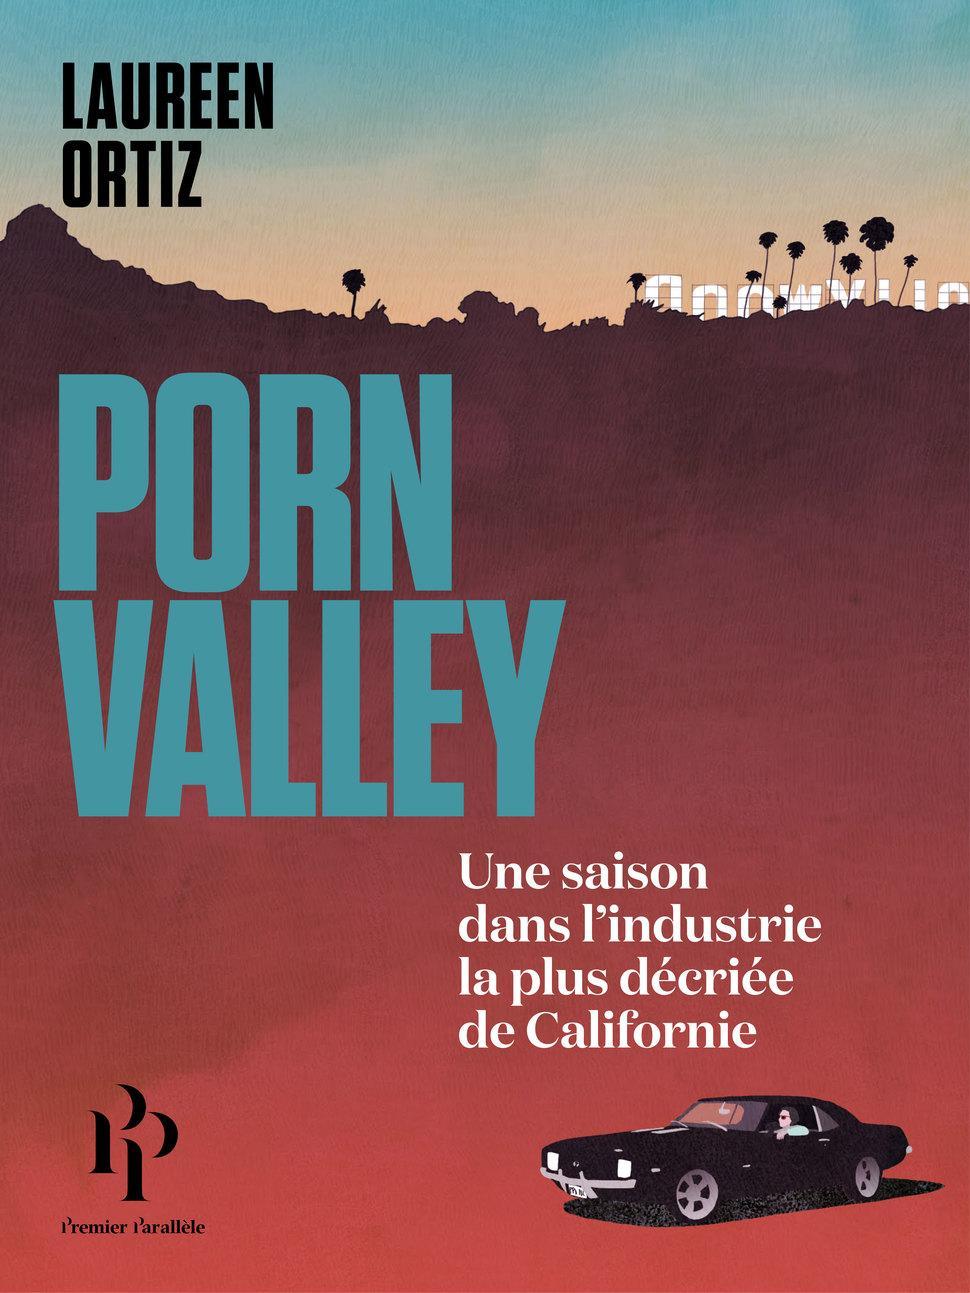 Laureen Ortiz: Porn Valley (Paperback, French language, 2018, Premier Parallèle)